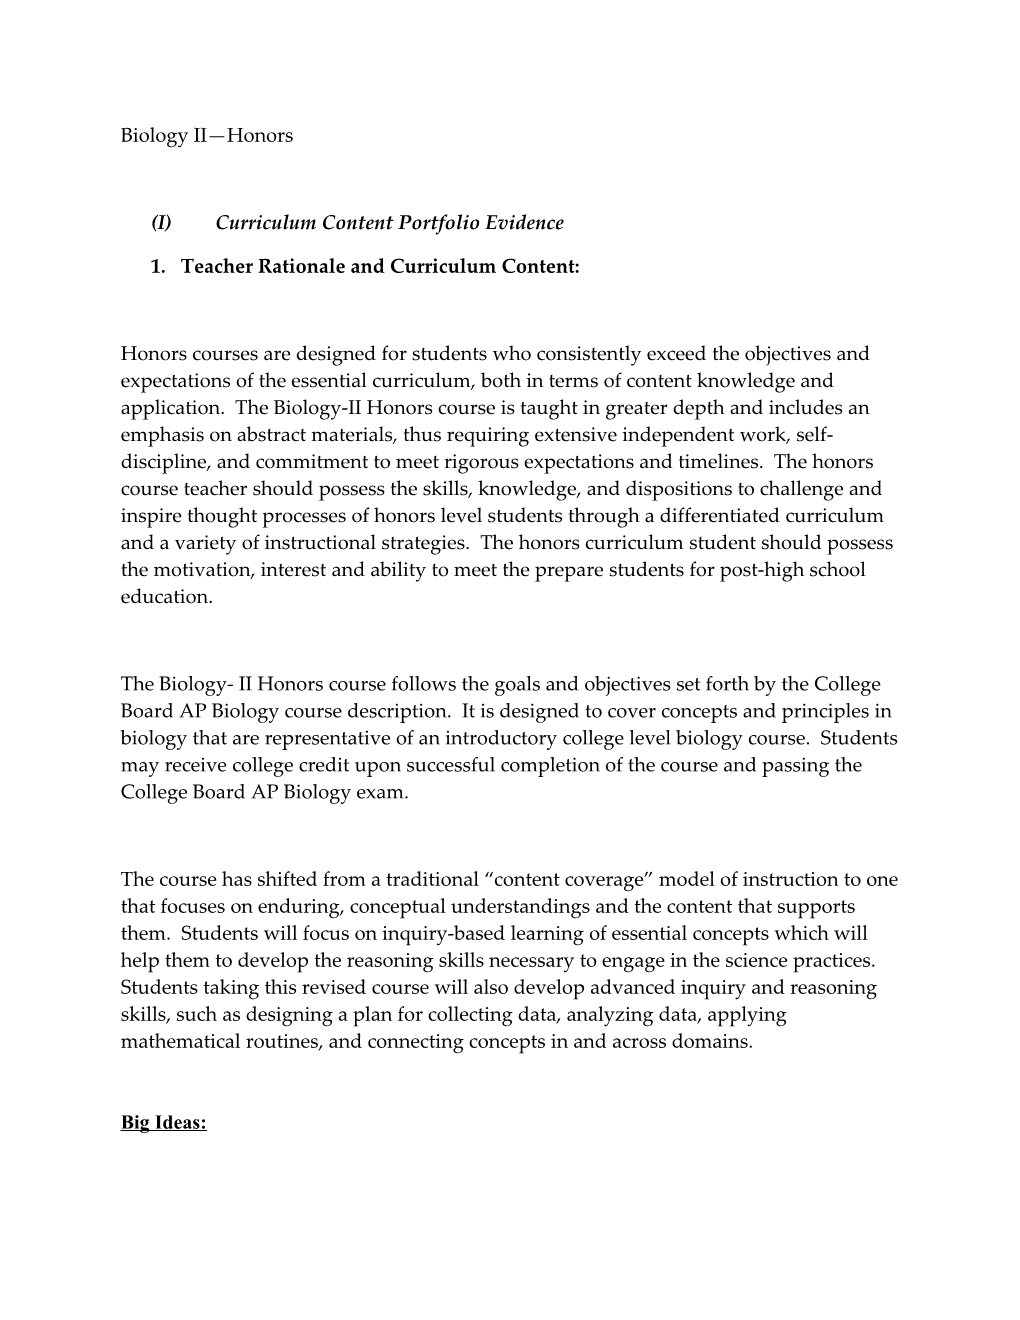 (I) Curriculum Content Portfolio Evidence